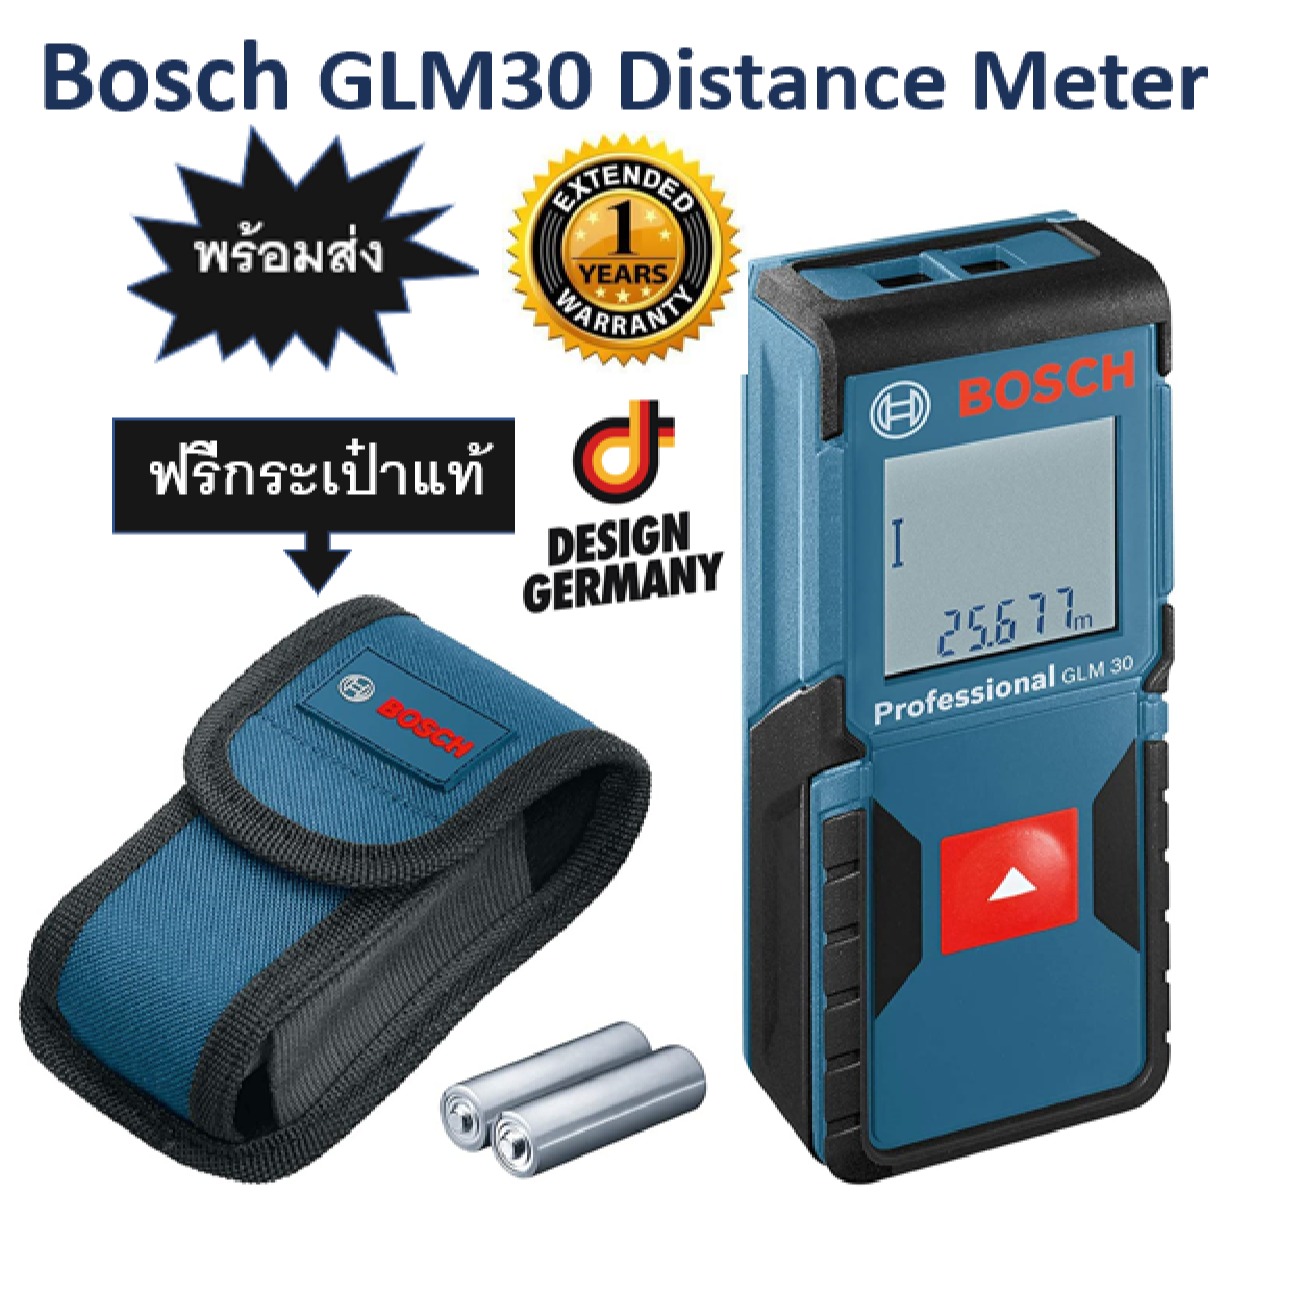 ส่งฟรี+ประกัน 1ปีเต็ม Bosch GLM 30 เครื่องมือวัดระยะ 30 เมตร Bosch GLM 30 Distance Meter แม่นยำ ทนทาน ใช้งานง่าย เครื่องมือที่มืออาชีพเลือกใช้